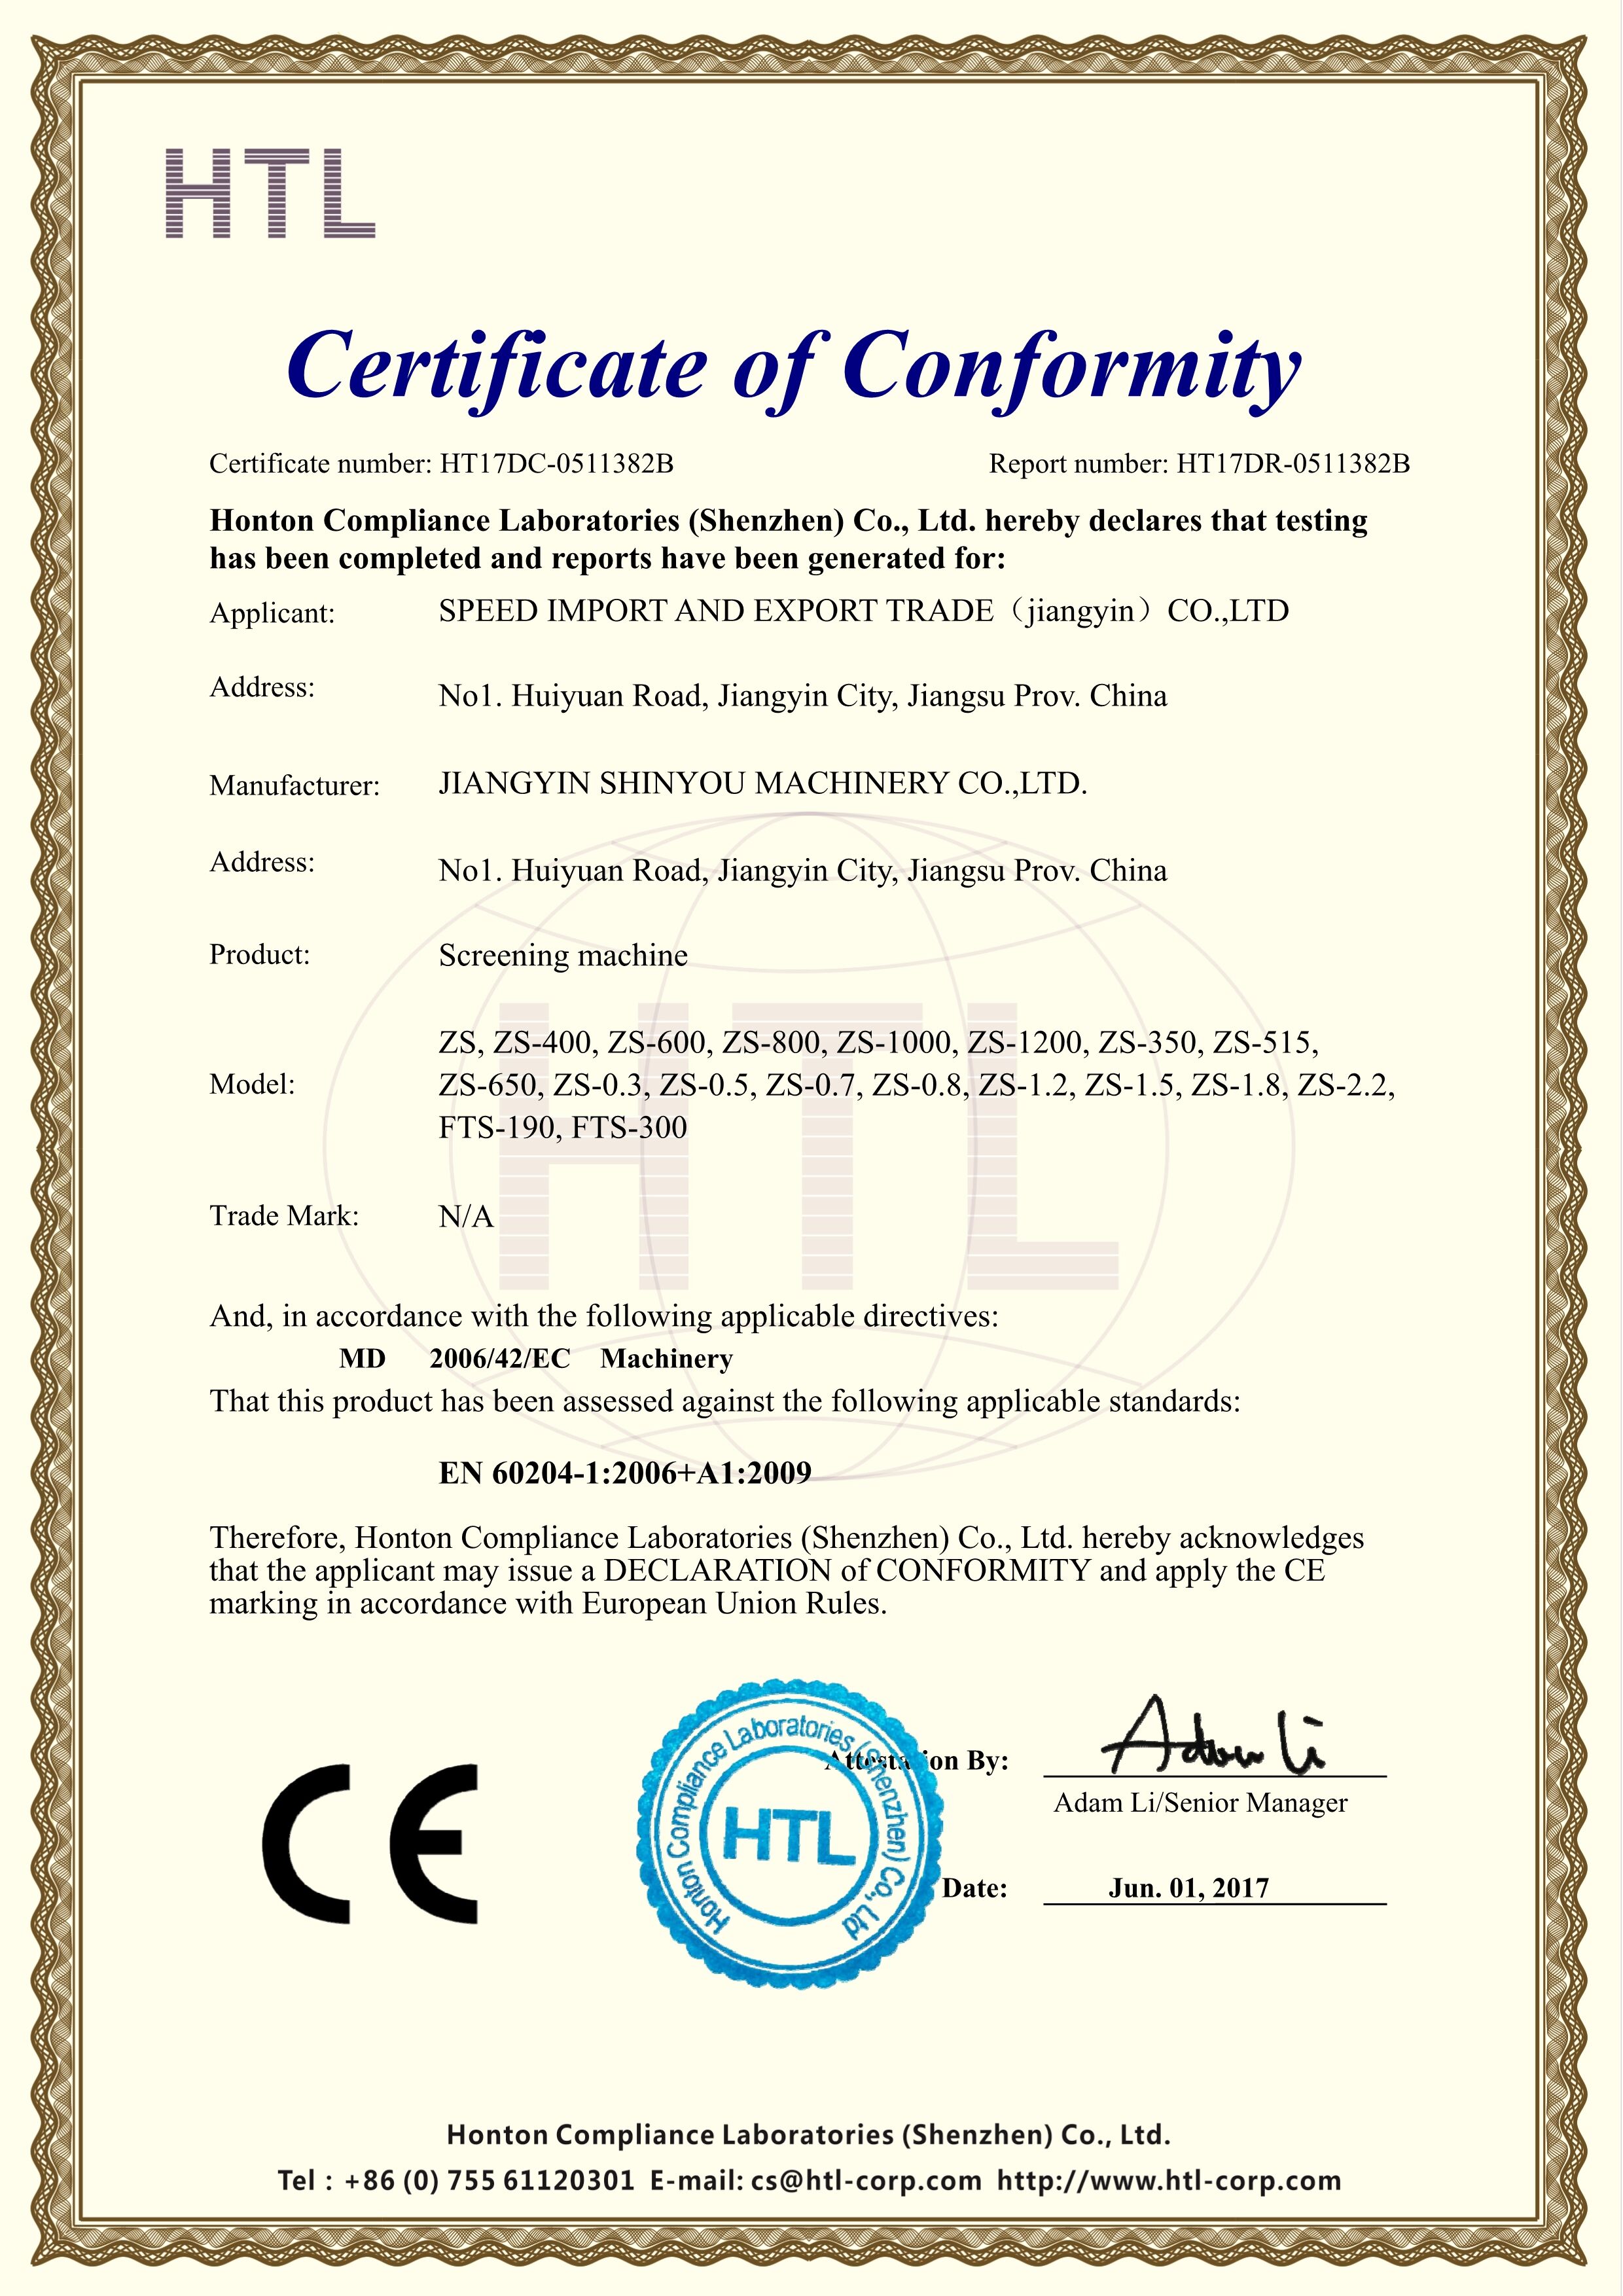 筛分机CE认证